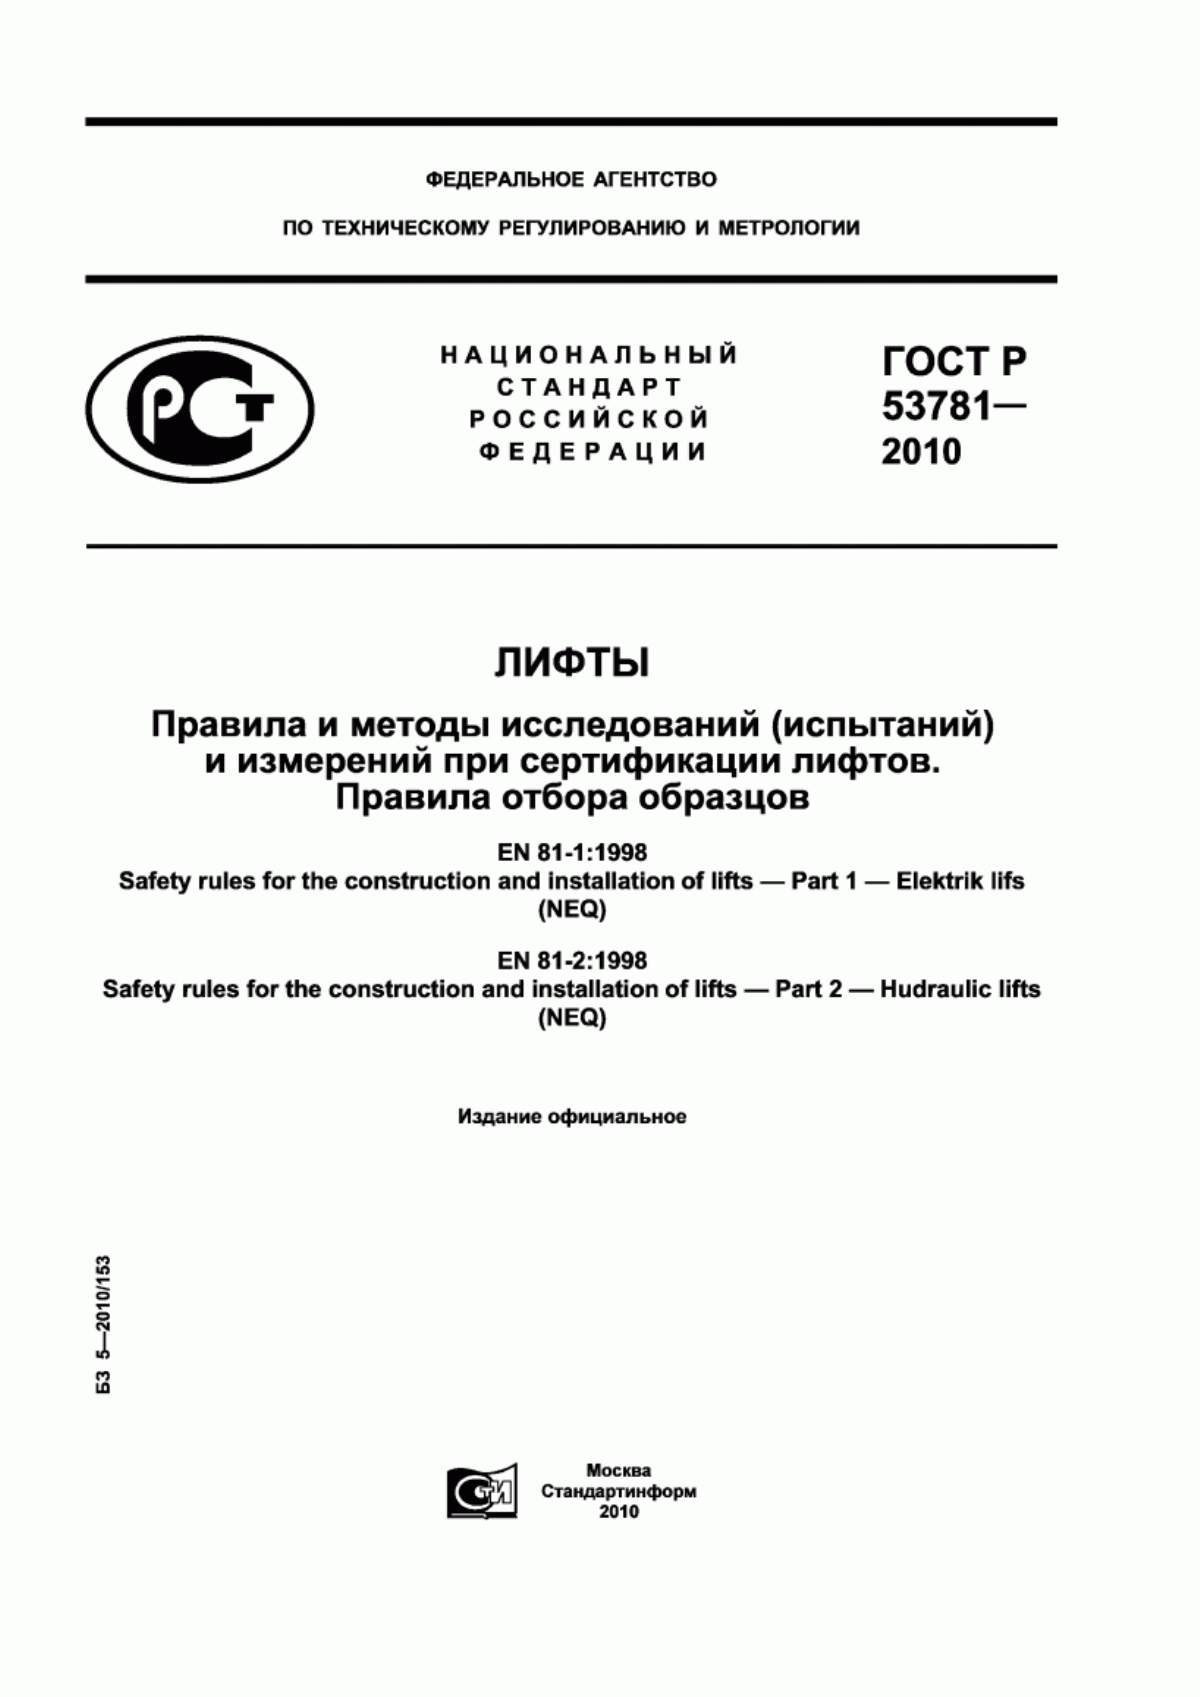 ГОСТ Р 53781-2010 Лифты. Правила и методы исследований (испытаний) и измерений при сертификации лифтов. Правила отбора образцов